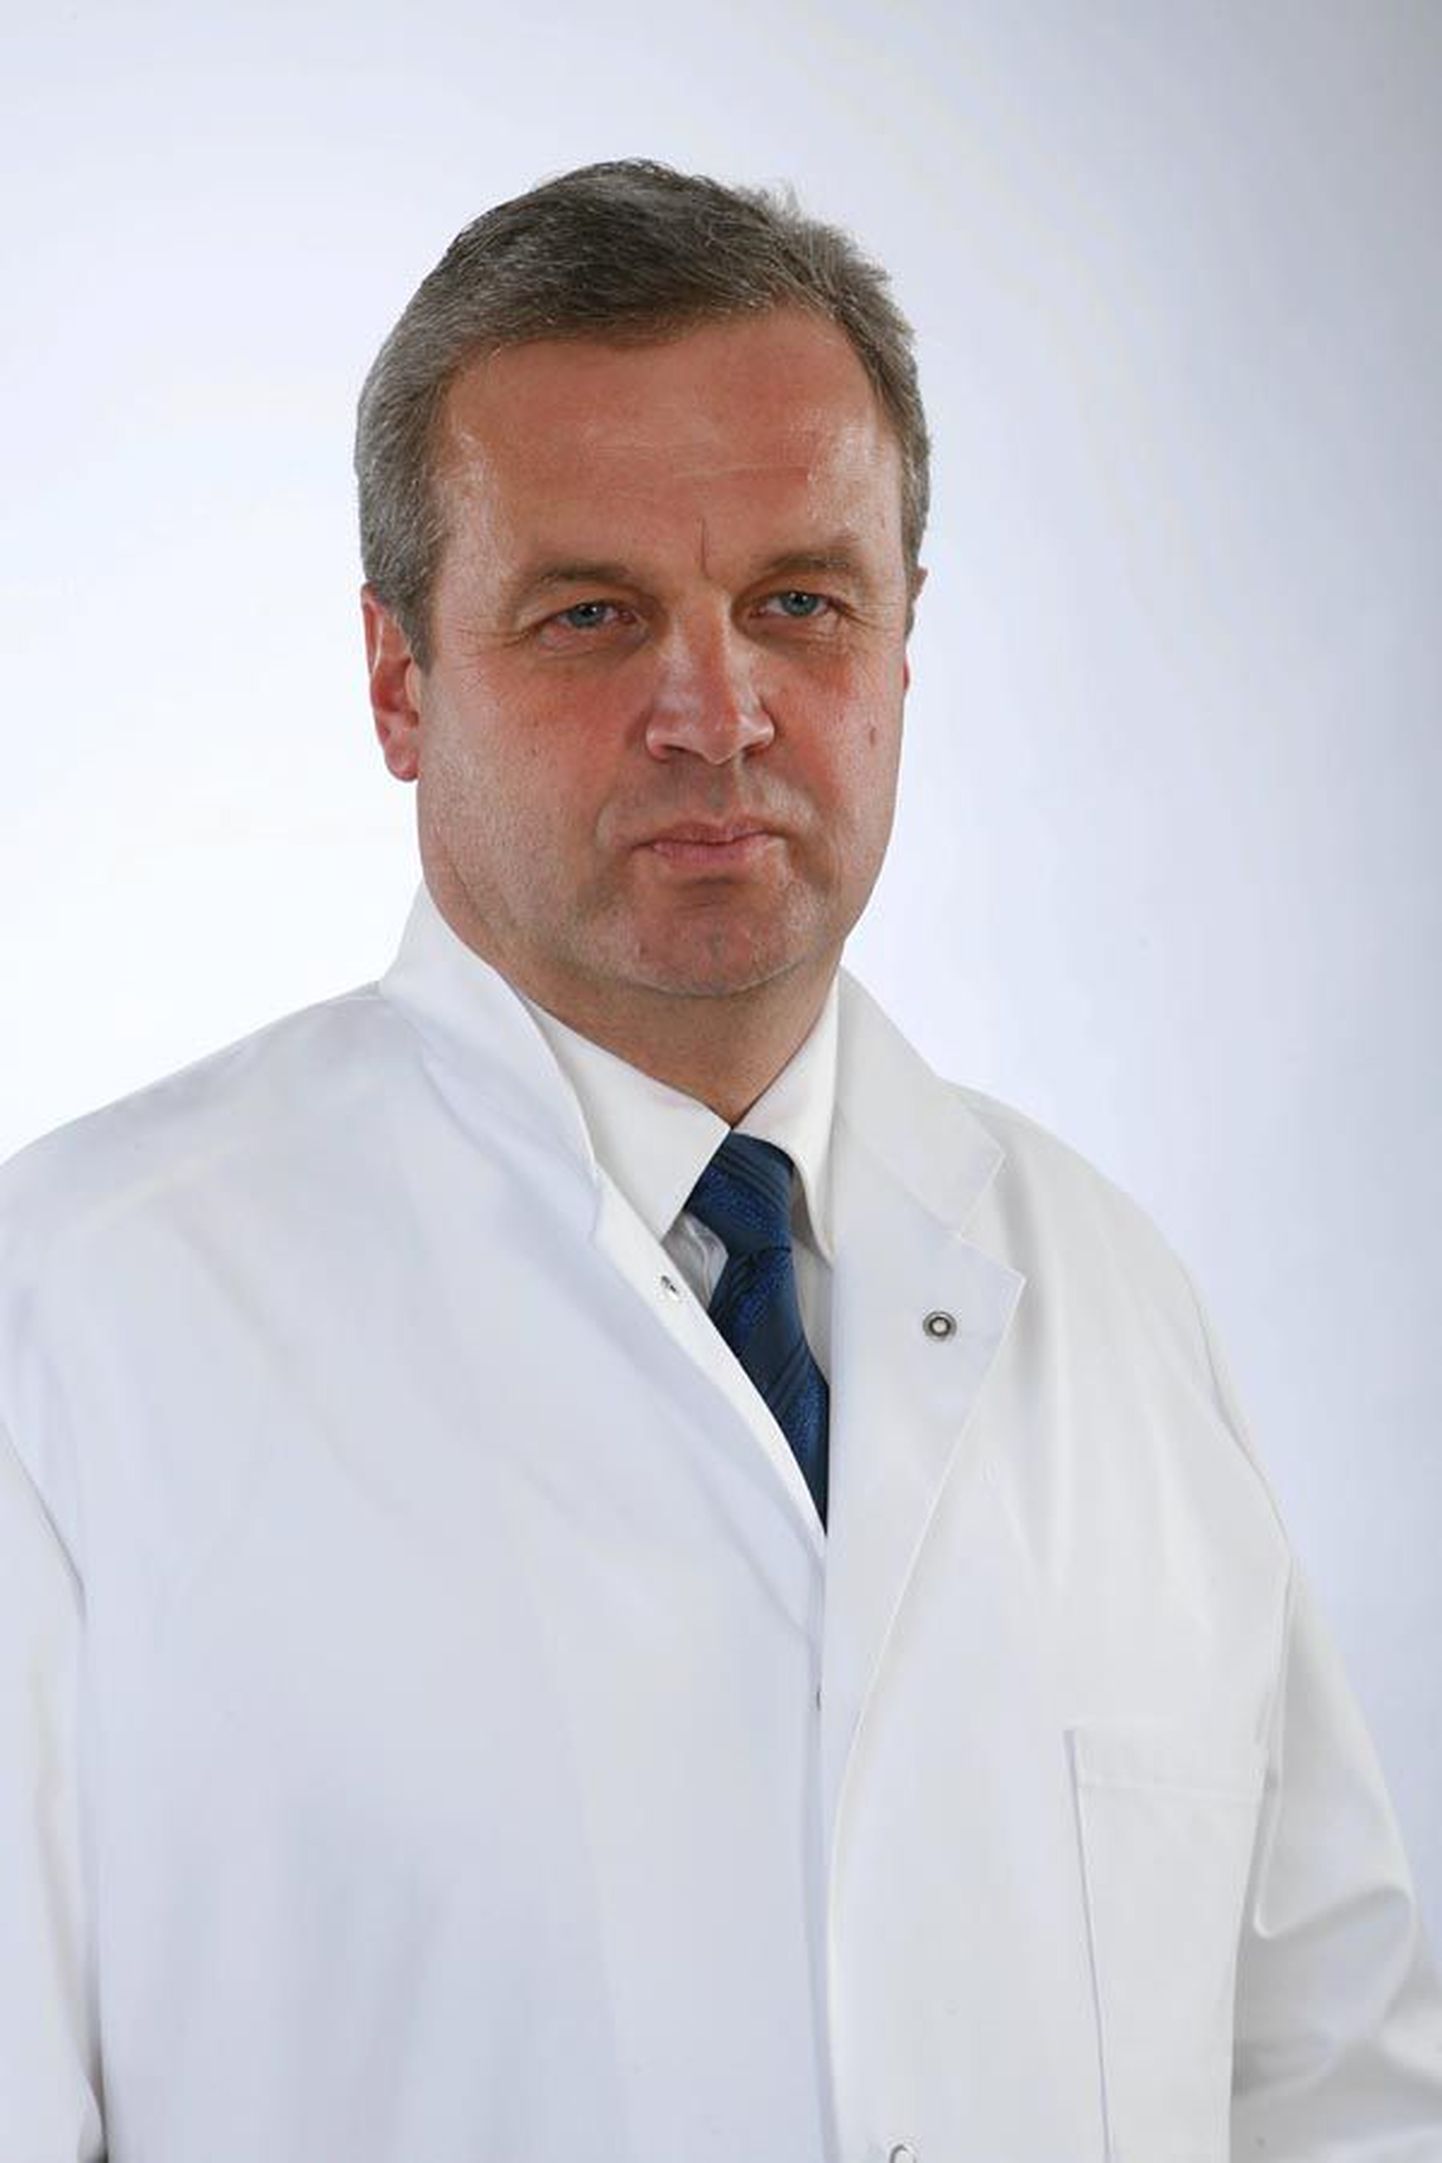 Riigikokku kuuluv Viljandi haigla uroloog Tõnu Juul leidis, et streikimine on vastuolus arsti eetikaga.